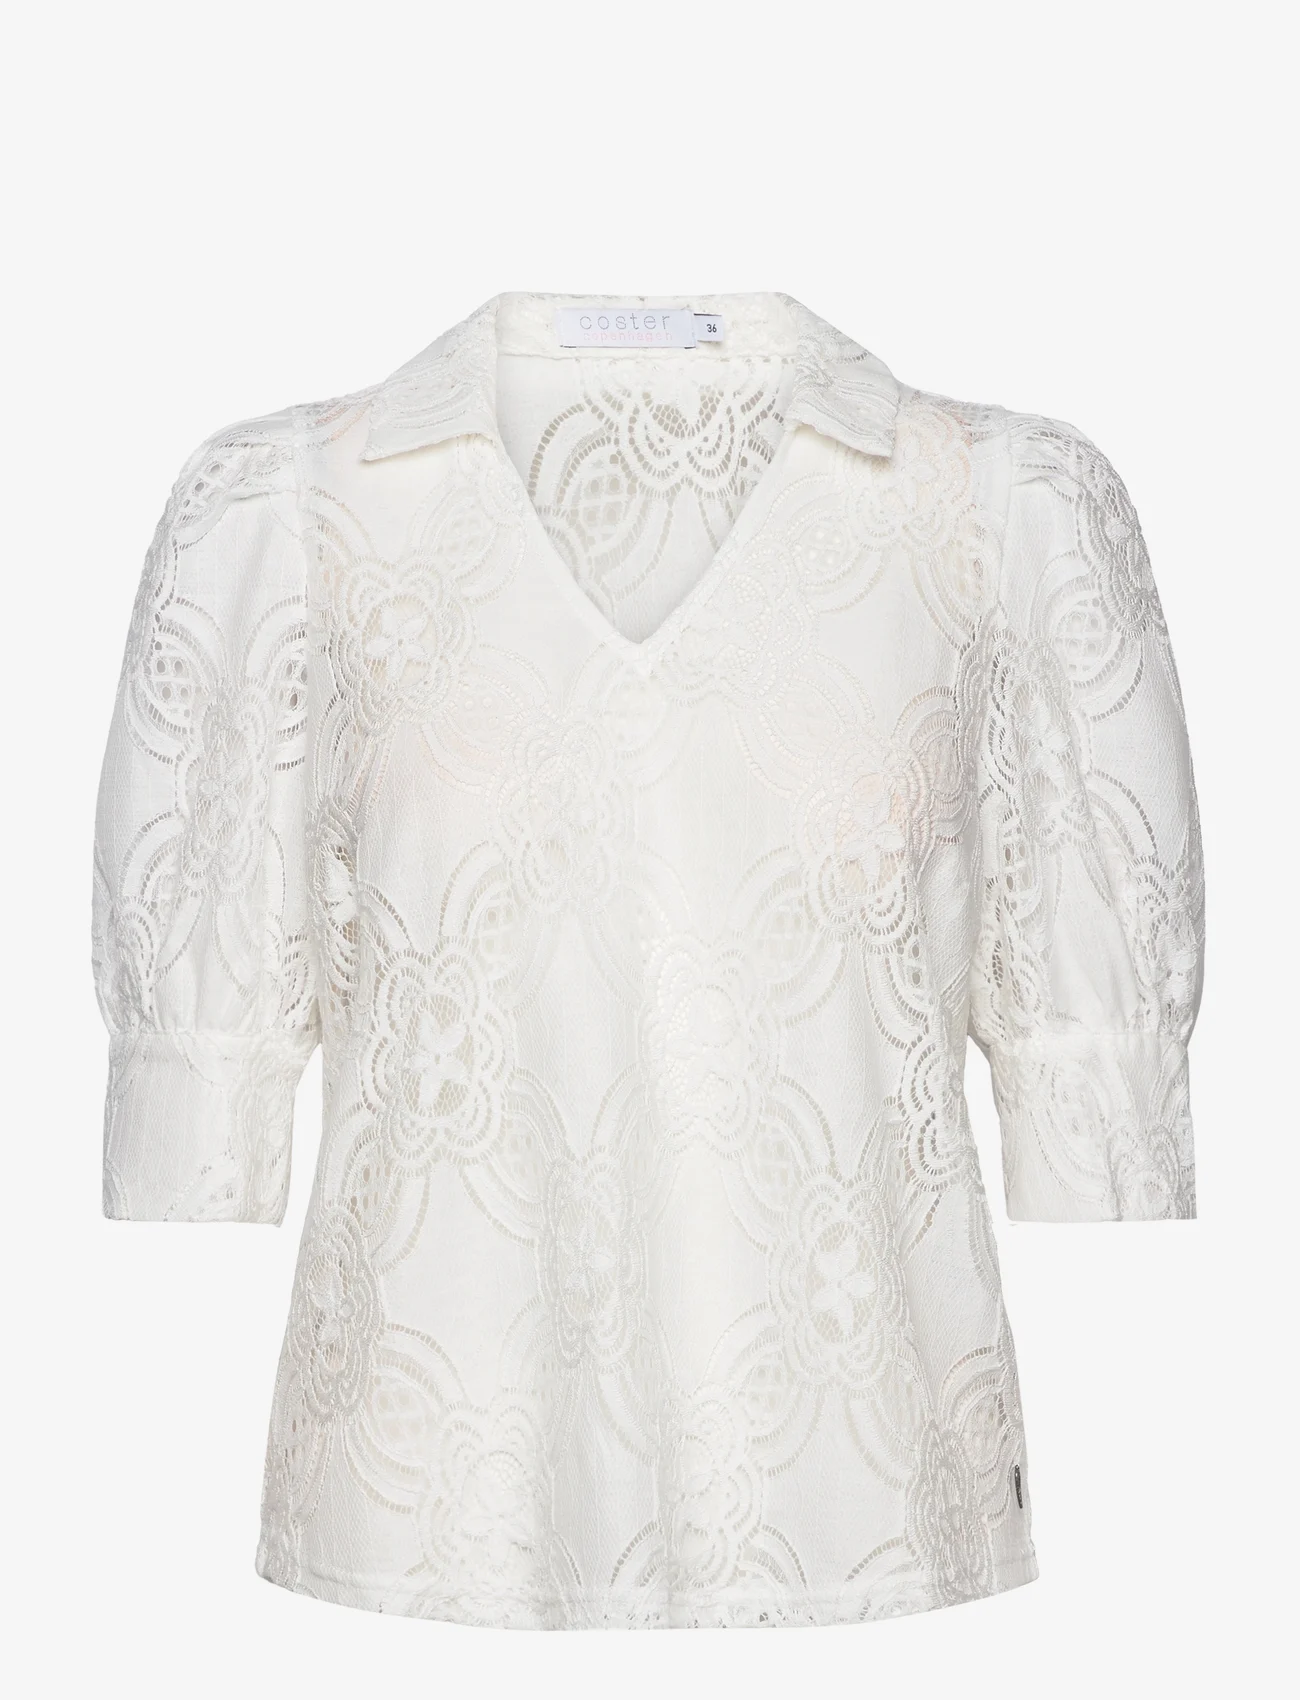 Coster Copenhagen - Lace shirt - kortærmede bluser - off white - 1